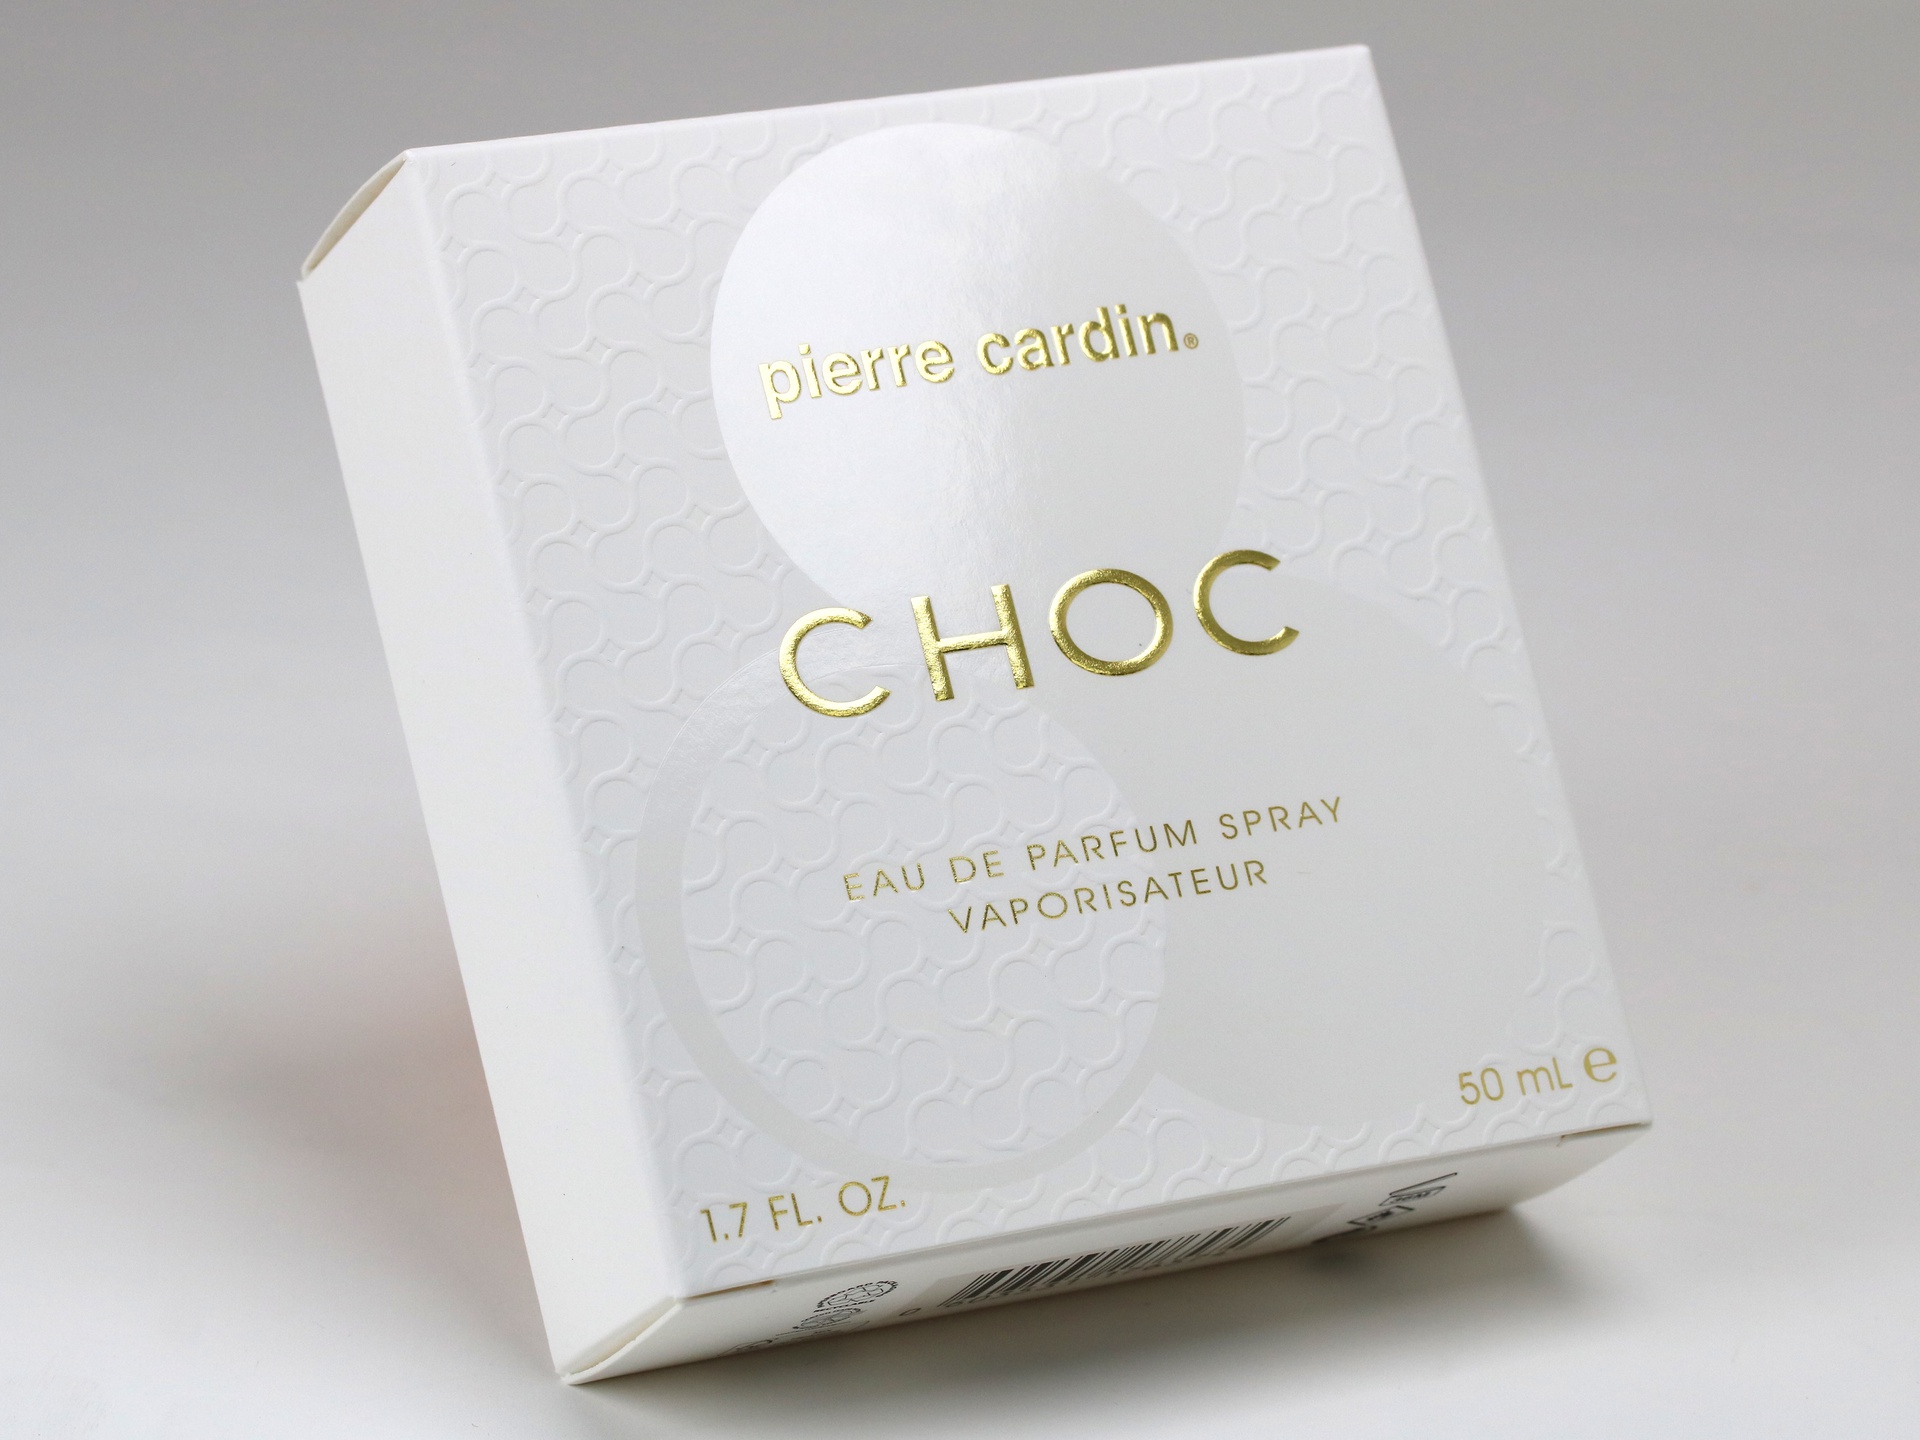 Pierre Cardin Choc folding carton features cold foil accents